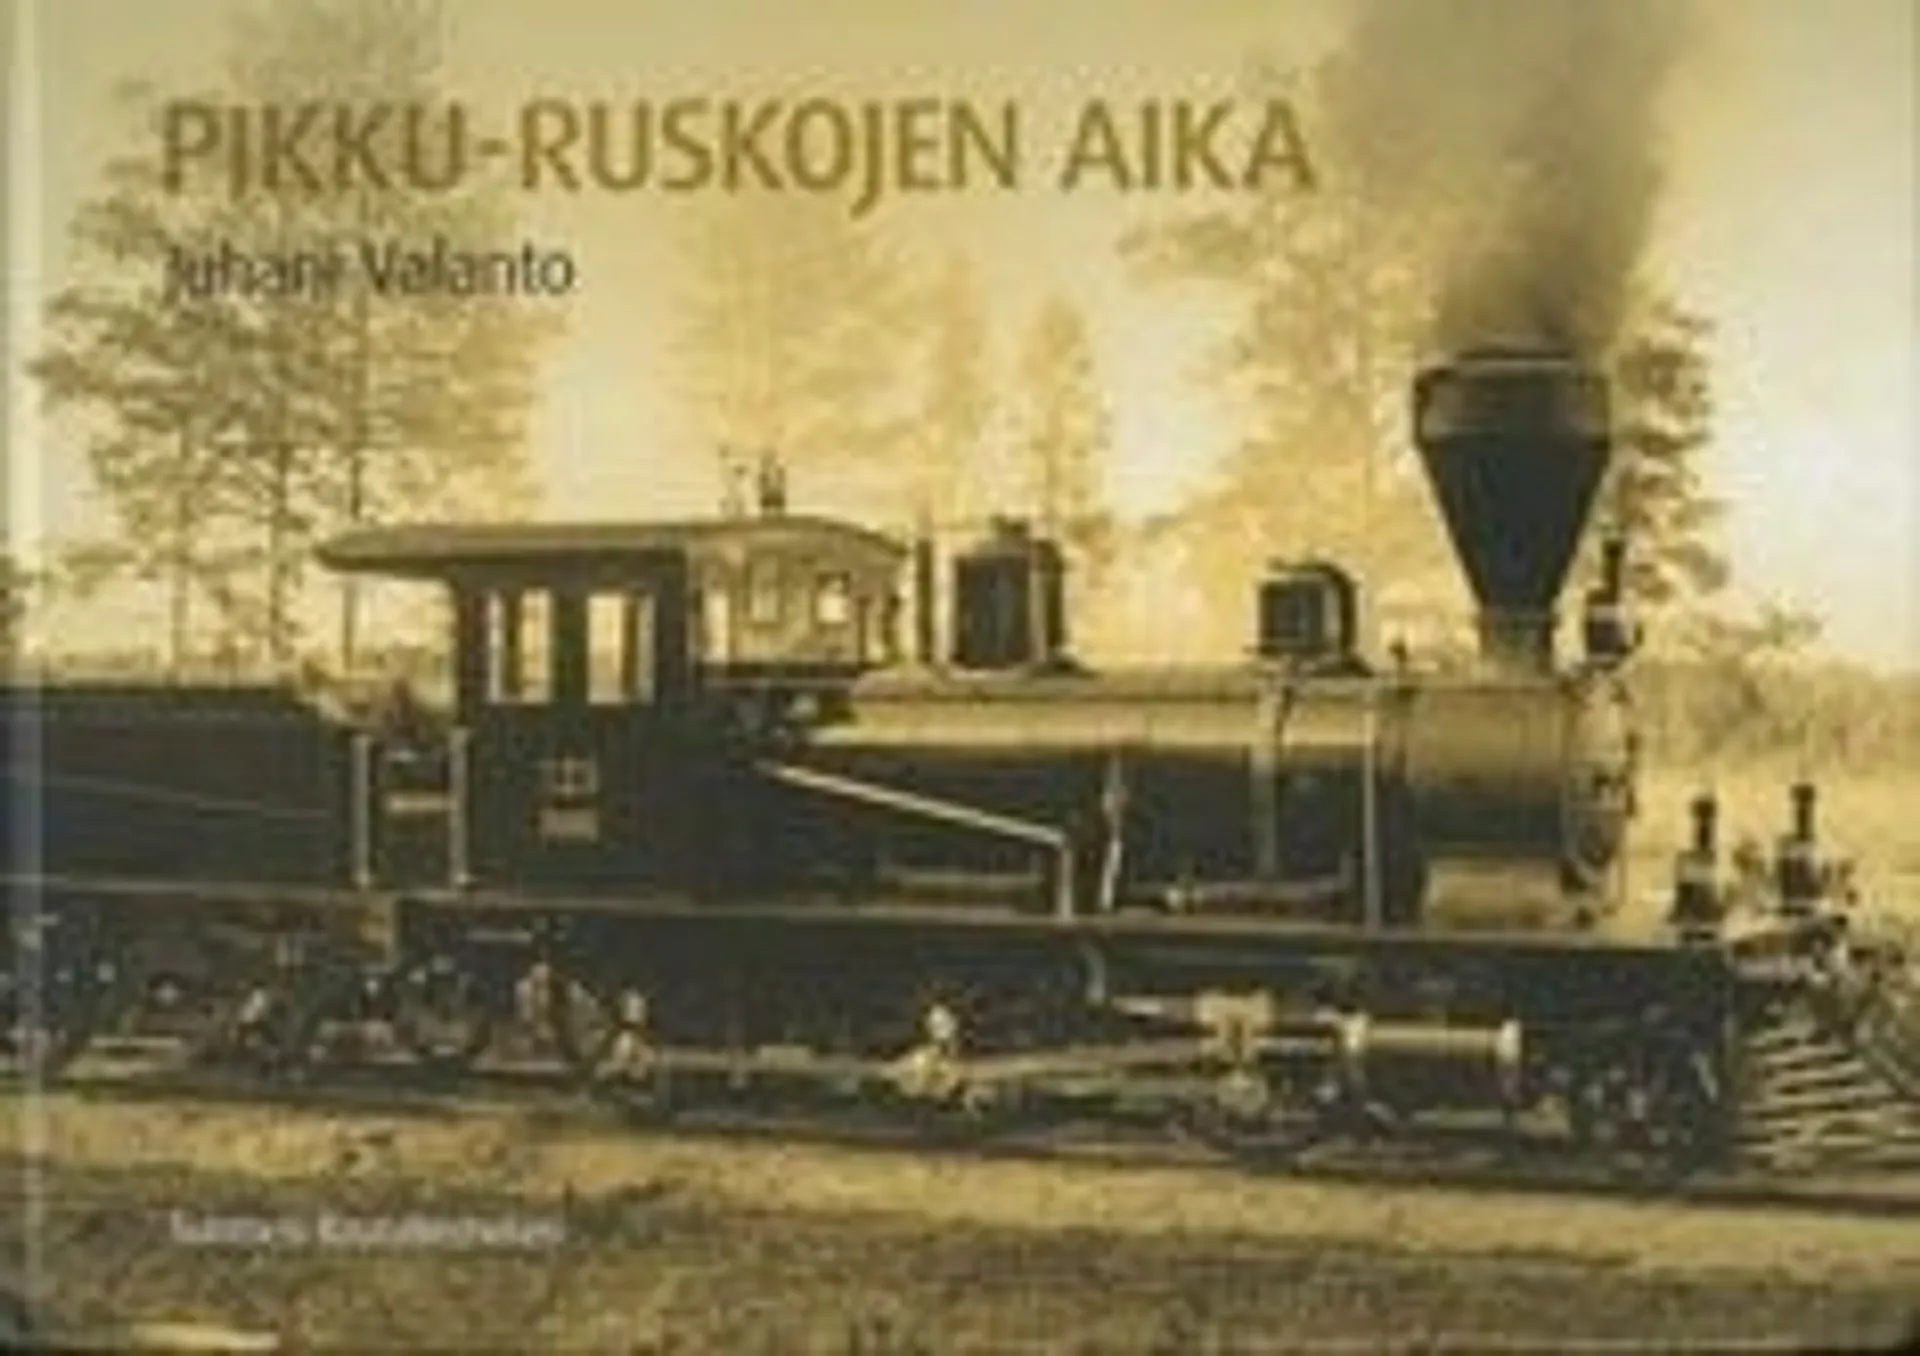 Valanto, Pikku-Ruskojen aika - kappale Suomen rautateitten historiaa 1885-1959